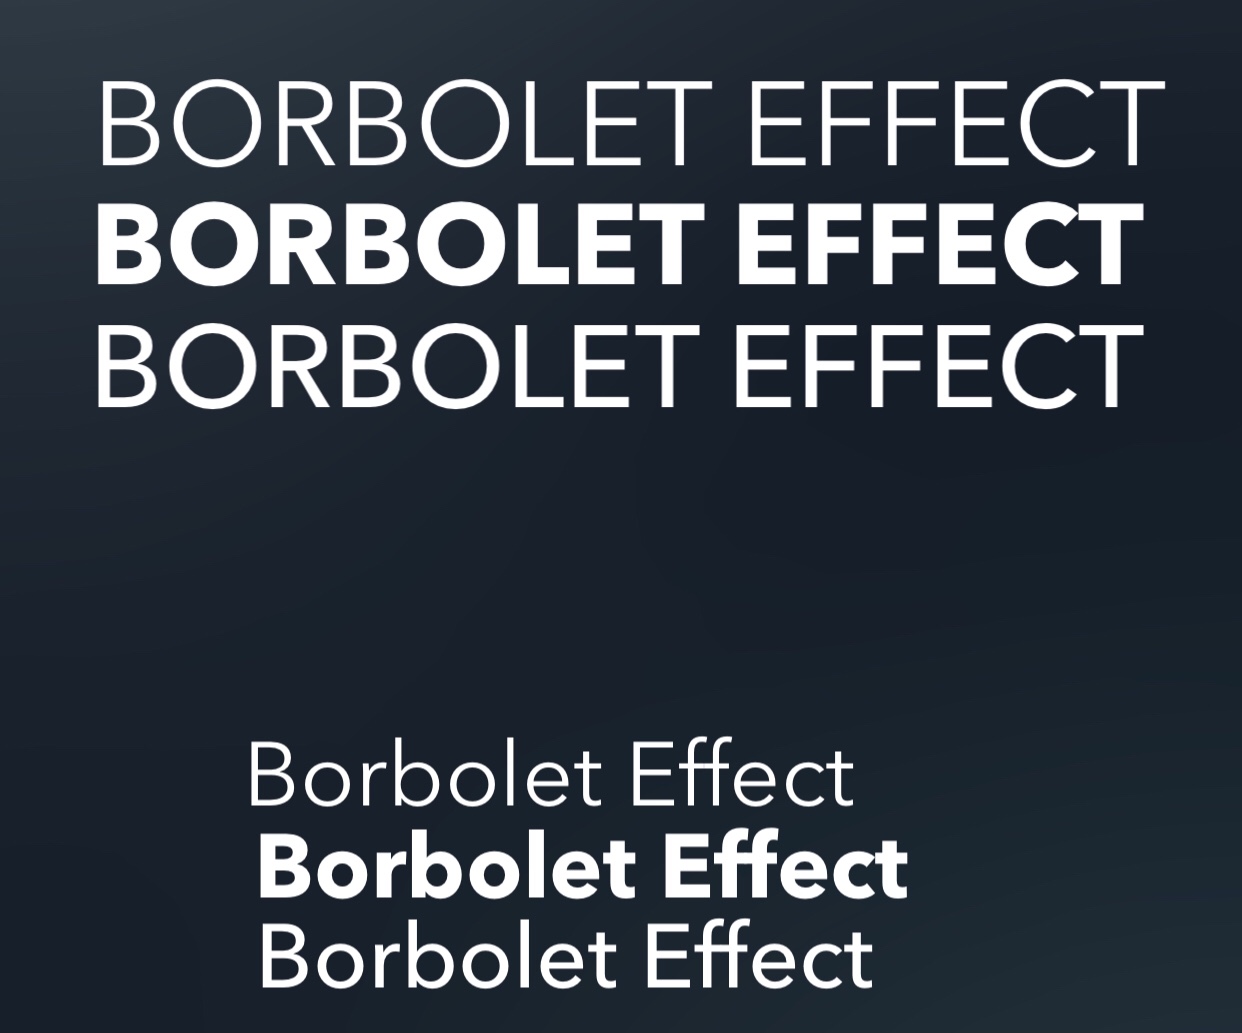 what a font “borbolet effect”?